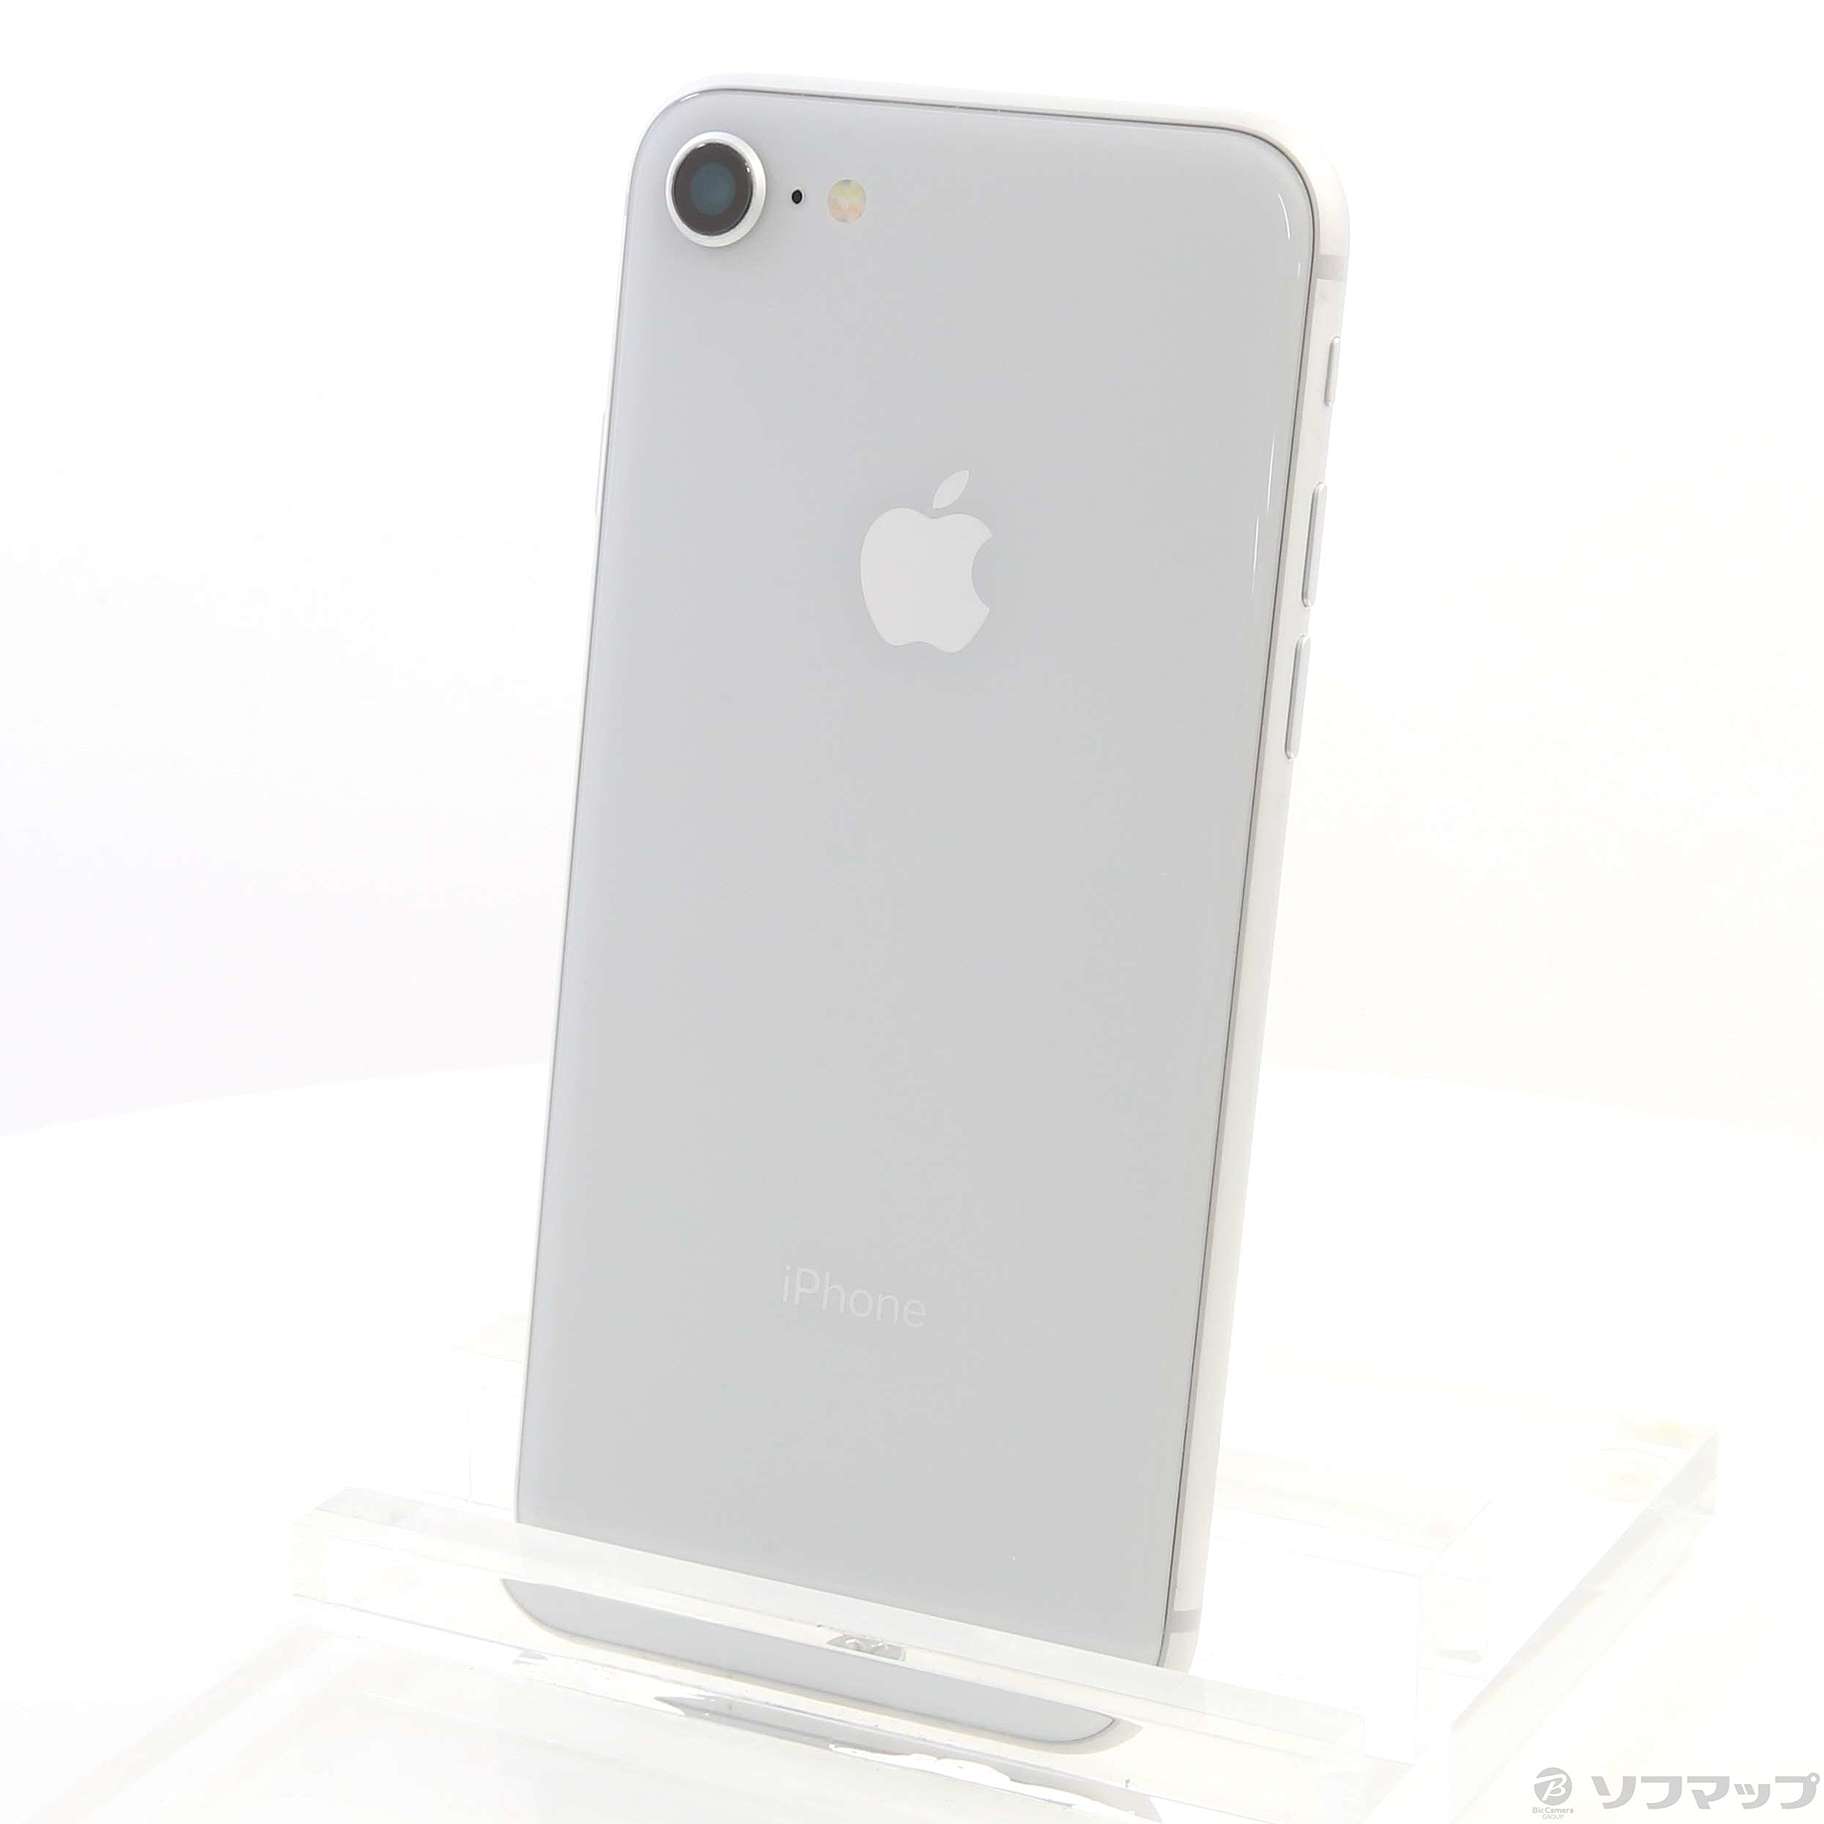 おすすめ】-iPhone - iPho•ne8 ブラッ•ク 68GB SIMフリー - lab.comfamiliar.com